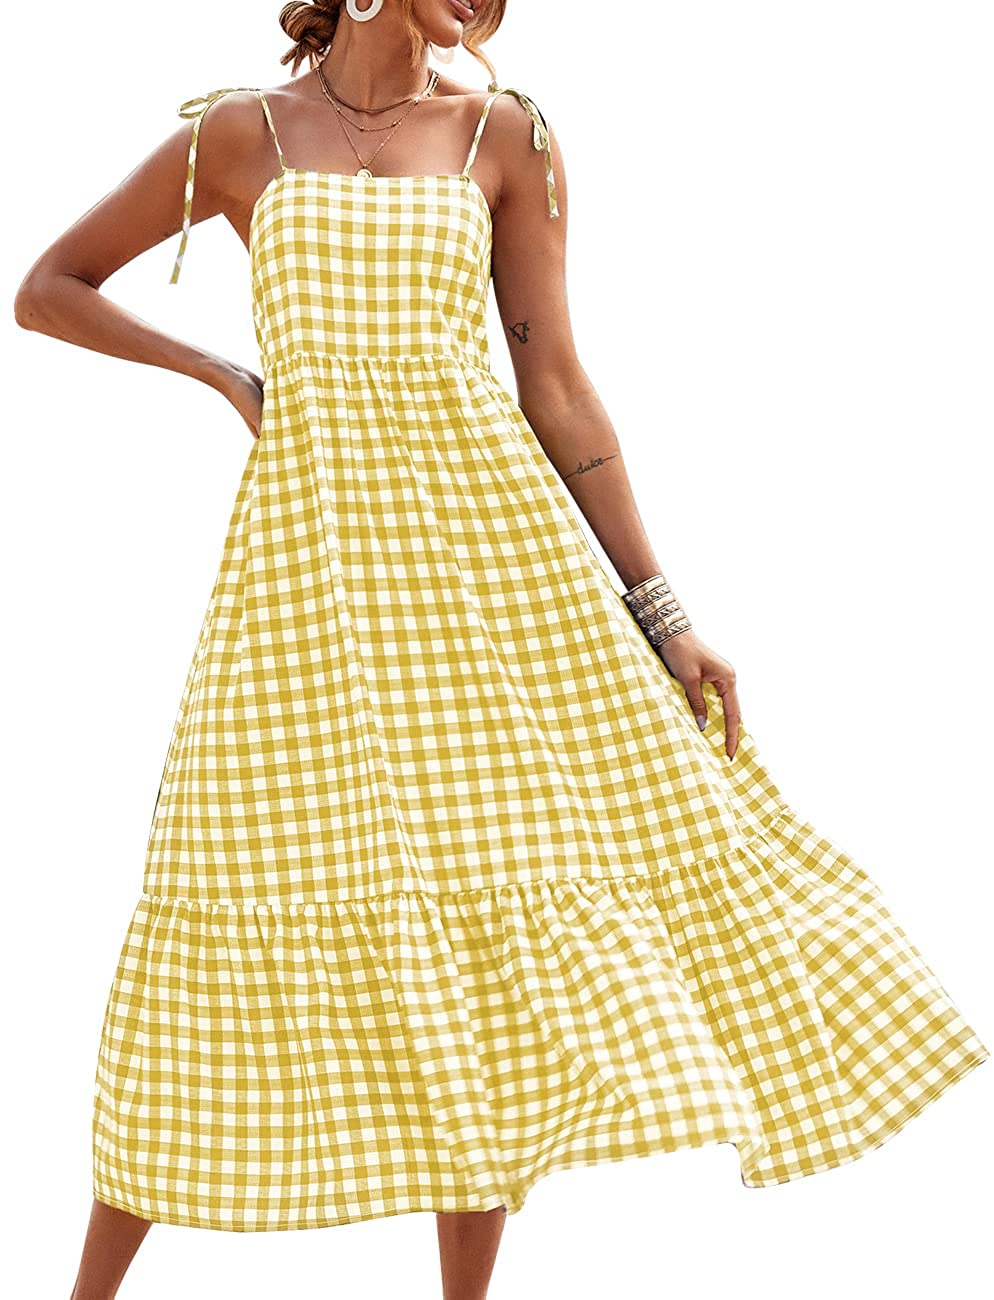 PRETTYGARDEN Summer Dress for Women Plaid Spaghetti Strap Square Neck  Tiered Ruf